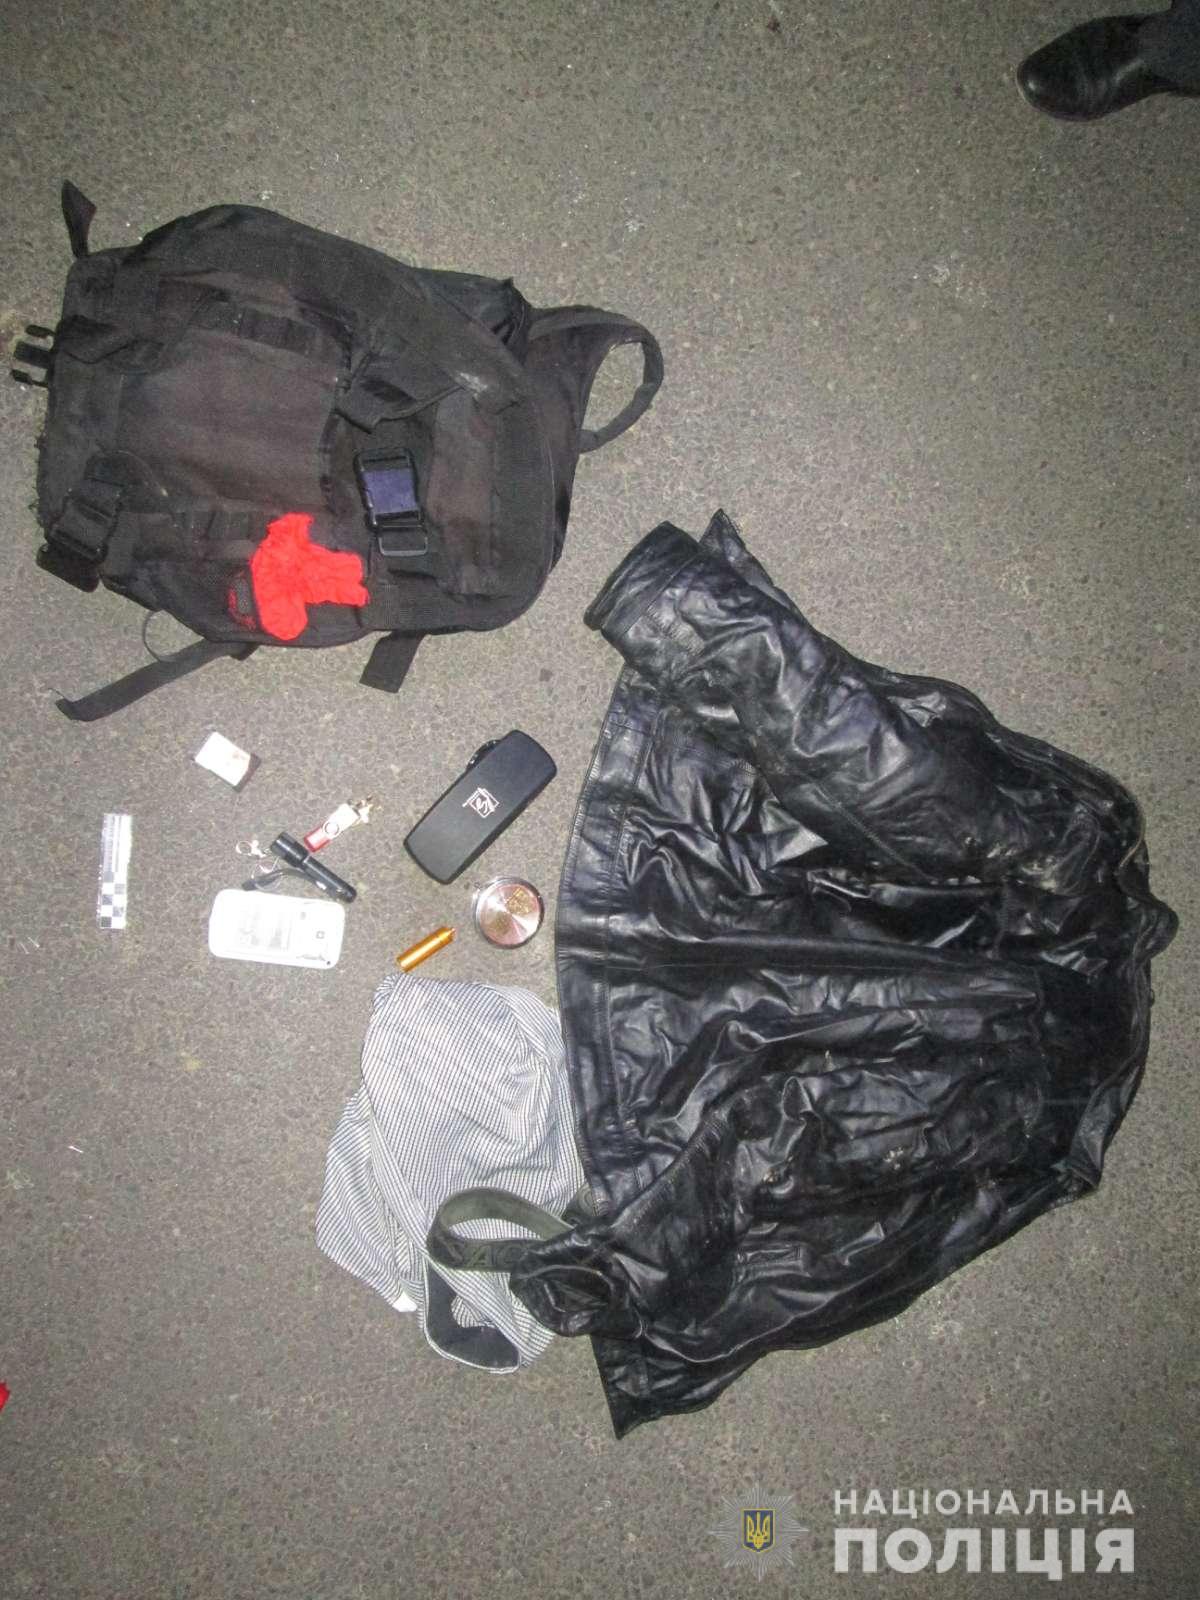 На Мукачівщині у закарпатця вилучили гранату із запалом, мобільні телефони, флеш-накопичувачі та балаклаву (ФОТО)